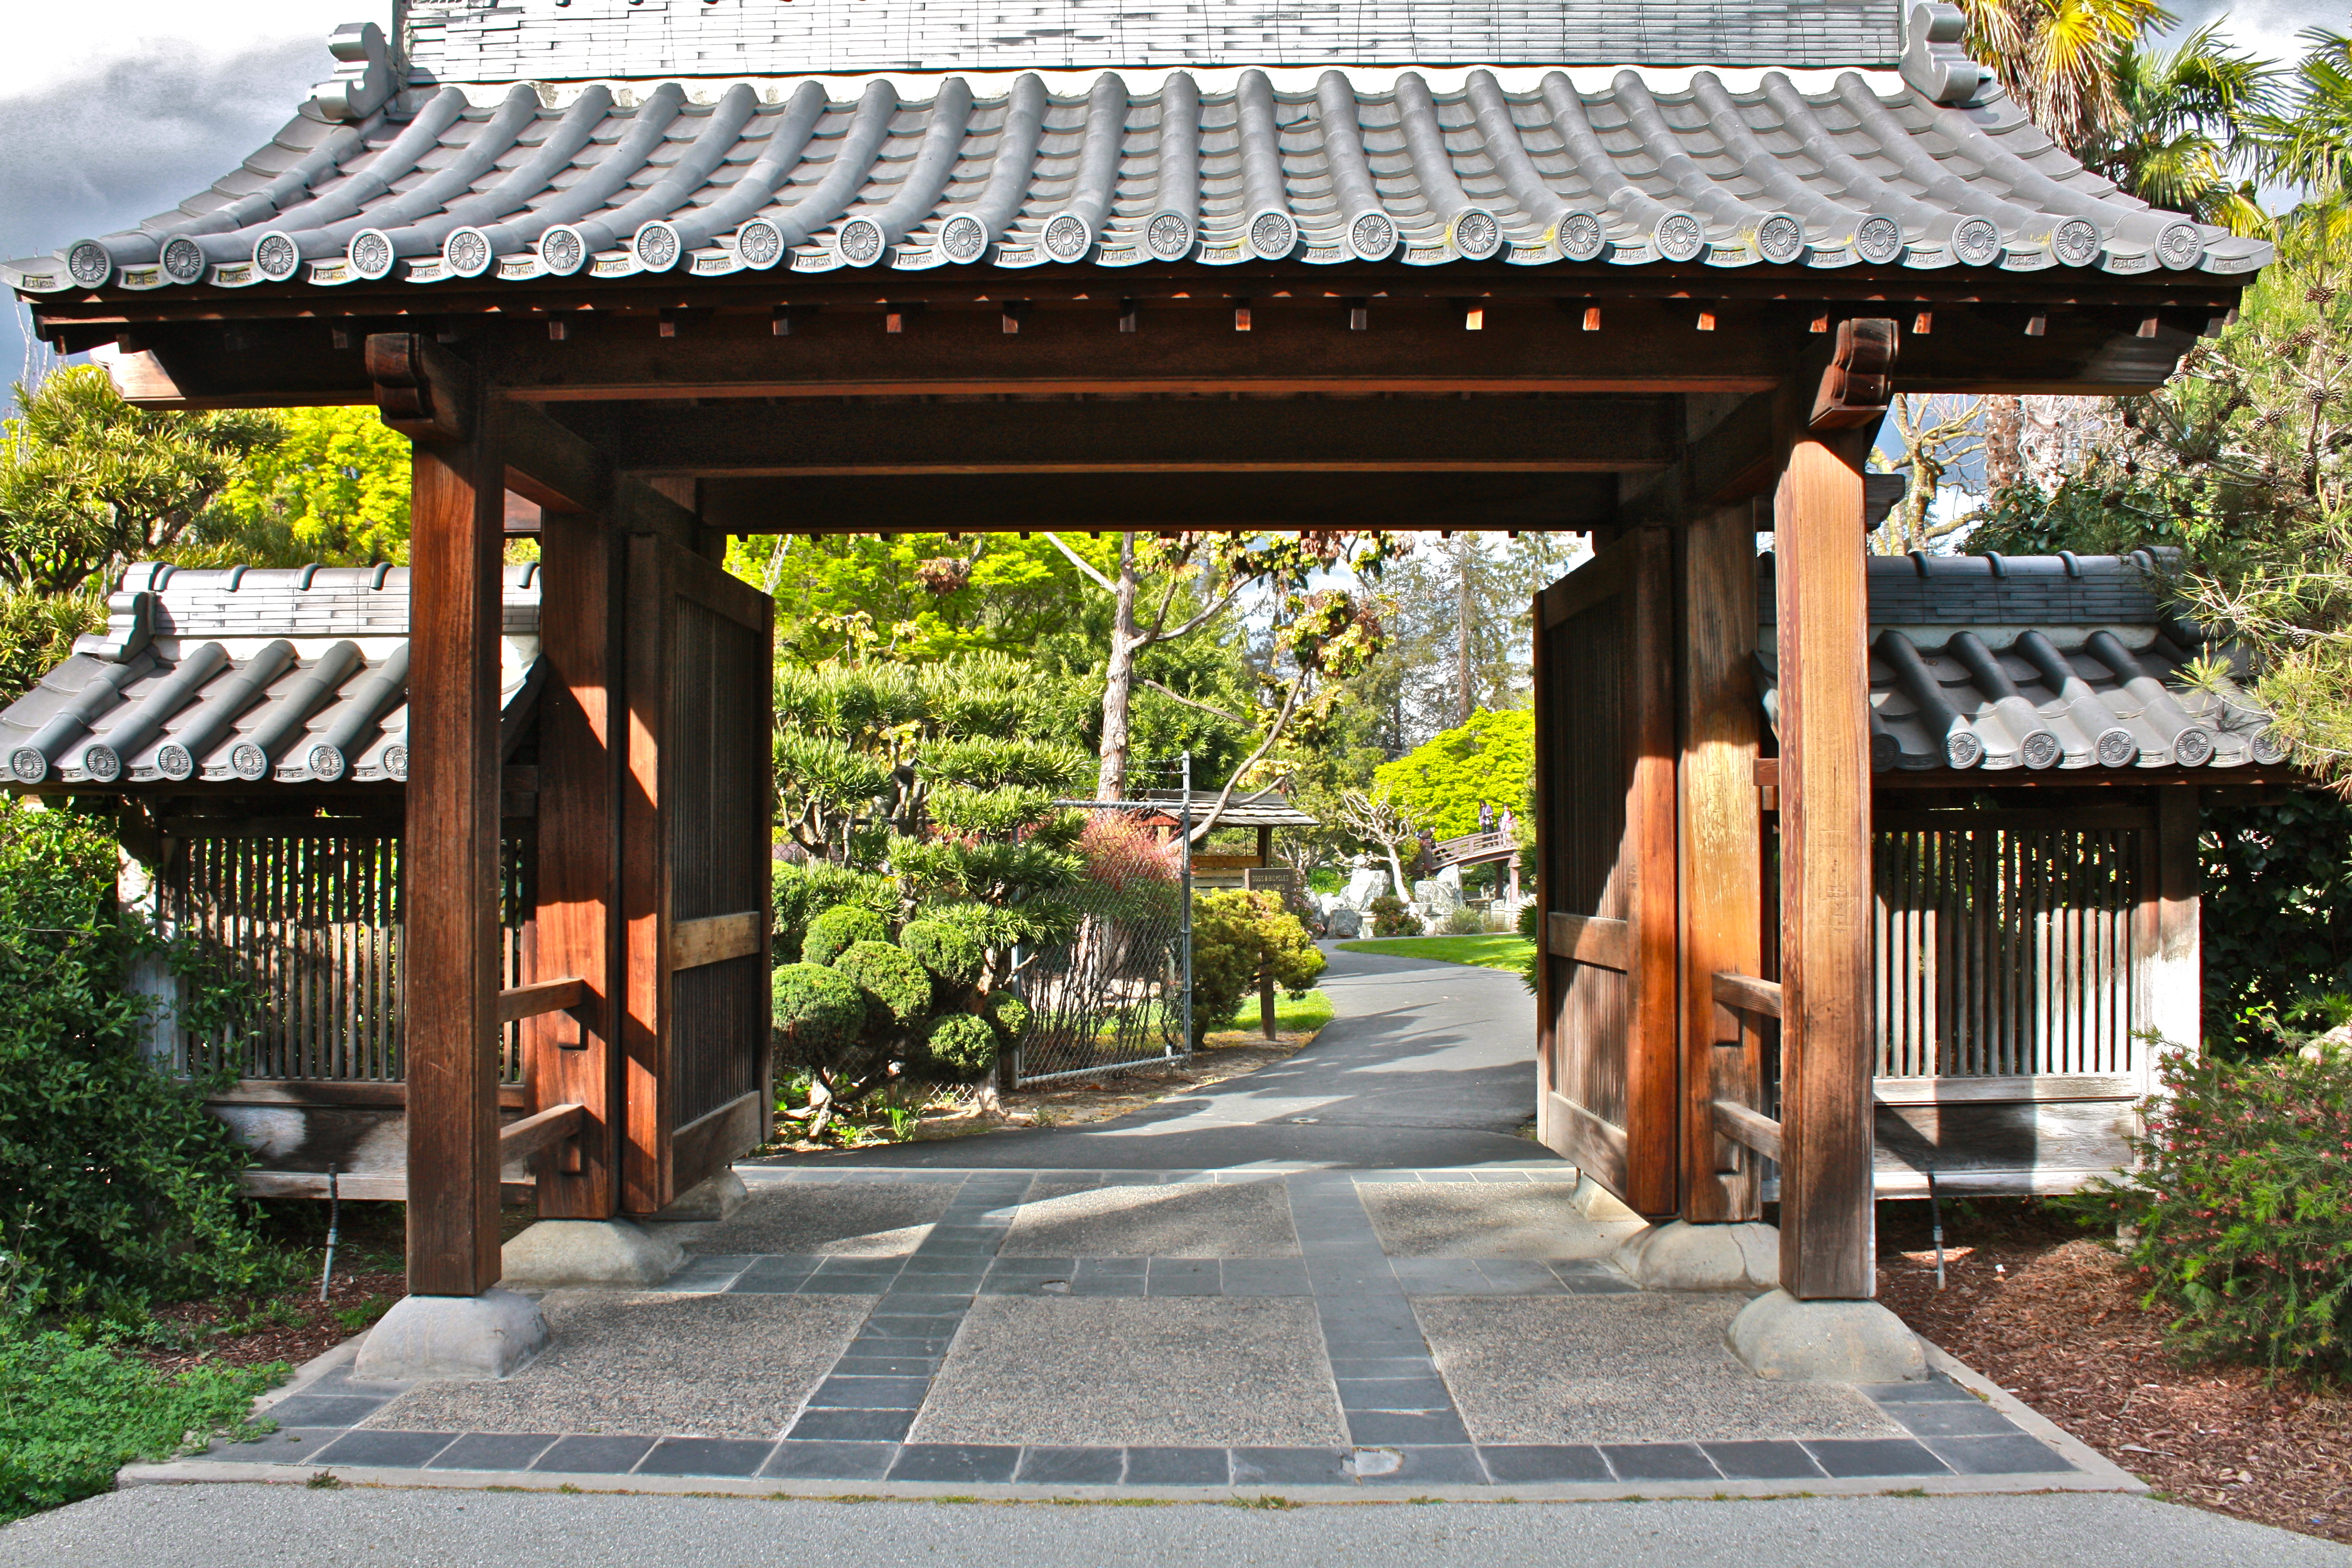 A Zen garden temple entrance.